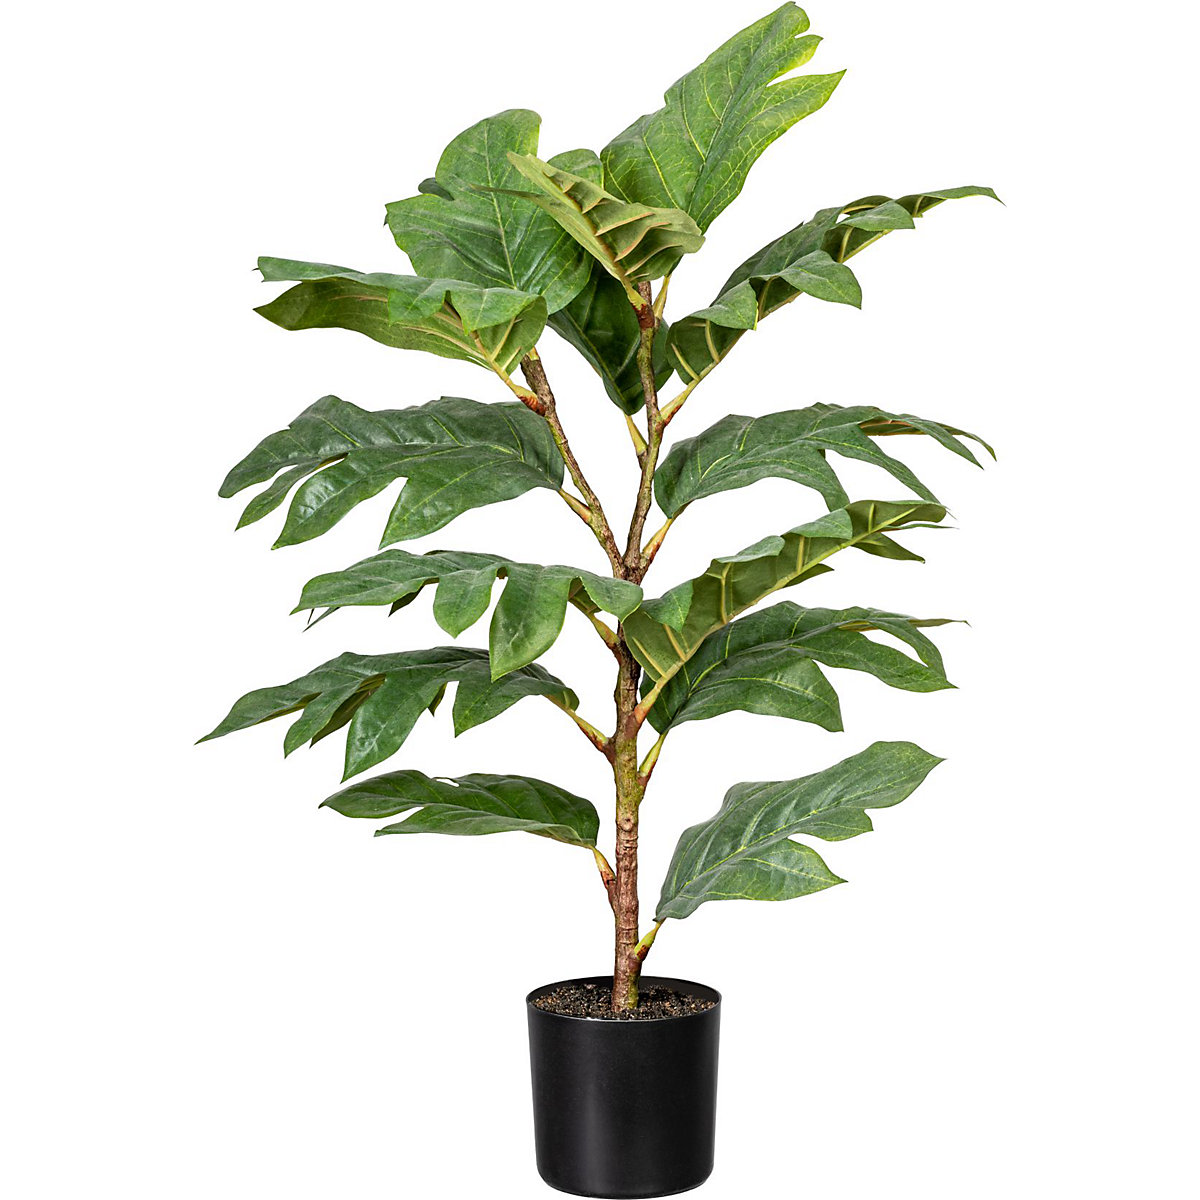 Artocarpus (breadfruit tree)